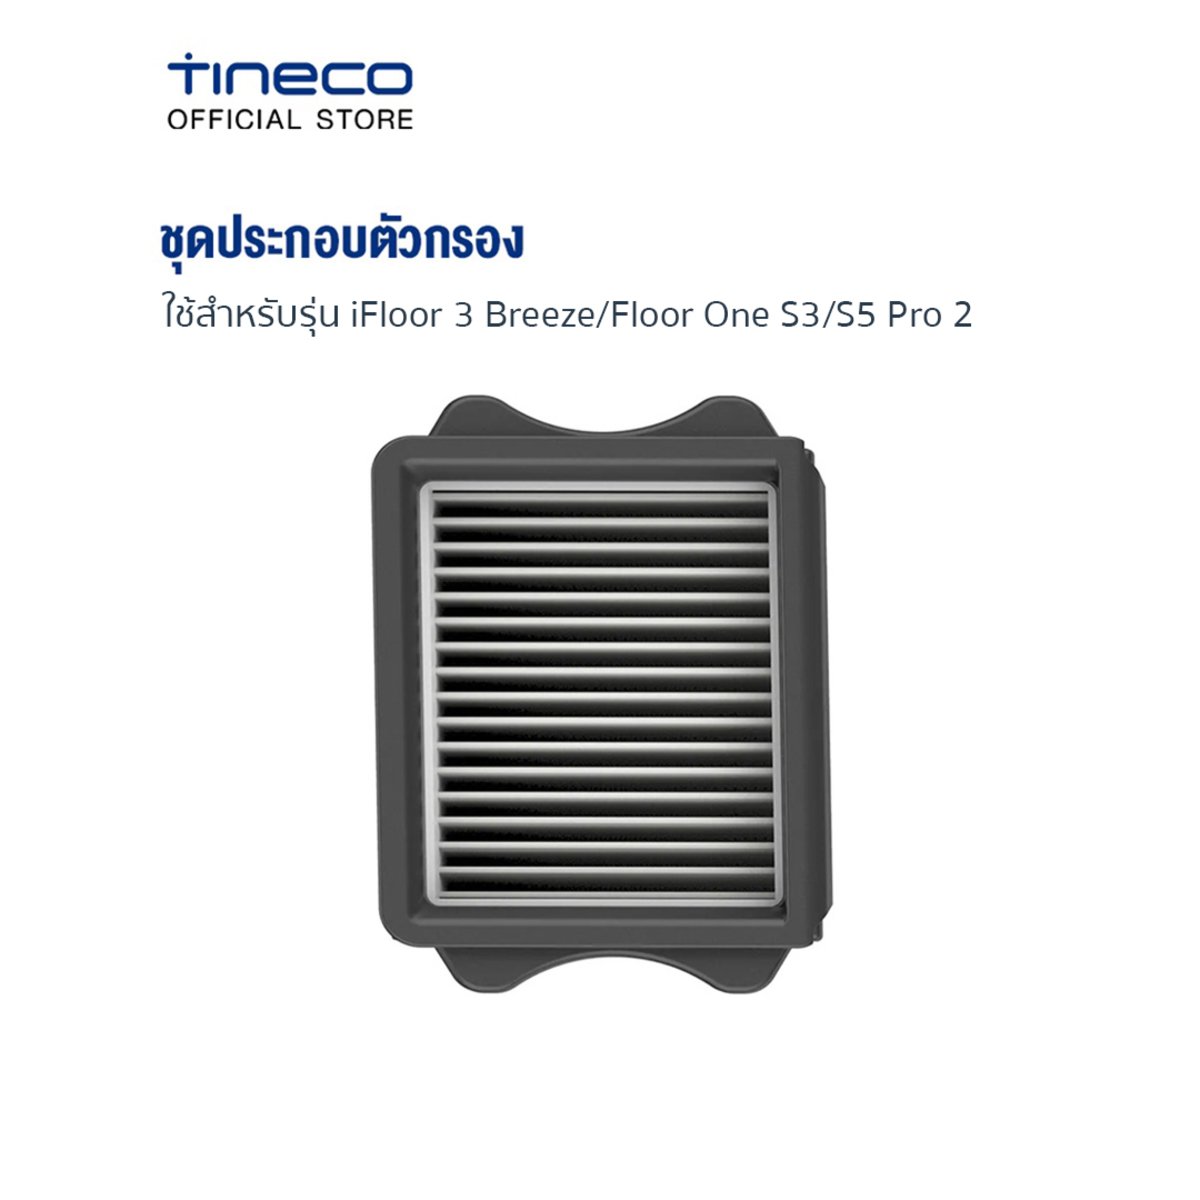 Tineco Floor One S5 Pro 2 ชุดประกอบตัวกรอง กรองอนุภาคละเอียด S5 Pro 2 HEPA  - NocNoc